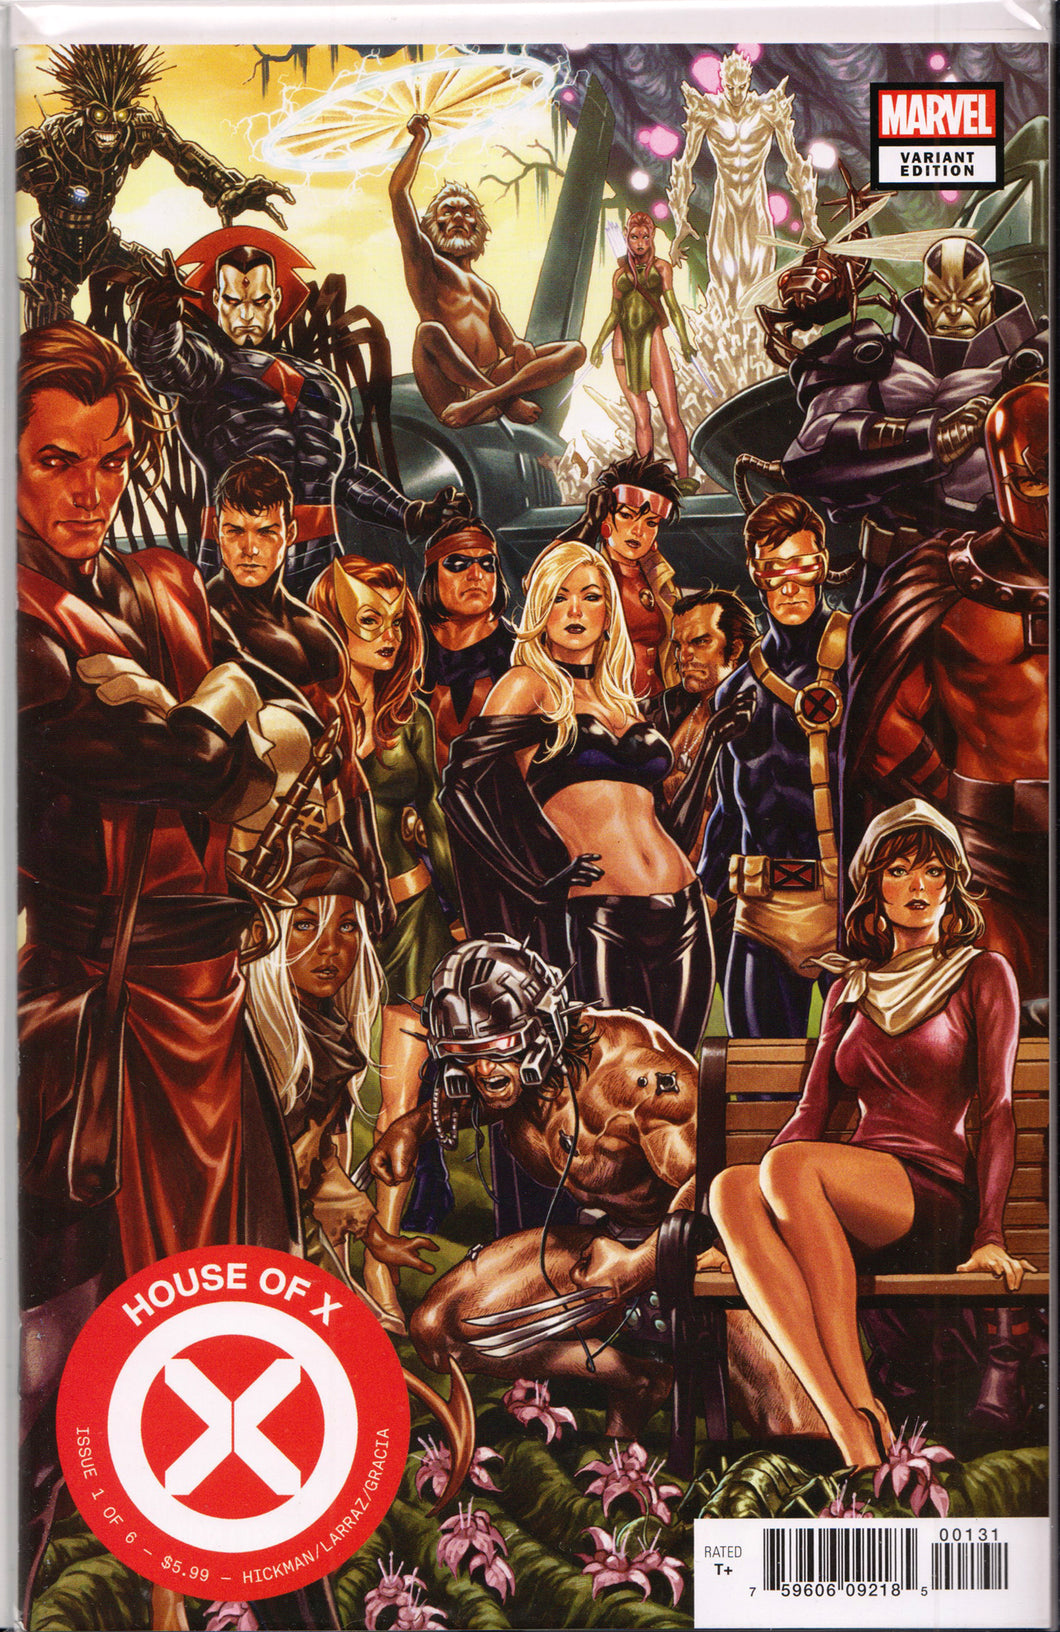 HOUSE OF X #1 (MARK BROOKS VARIANT) ~ Marvel Comics